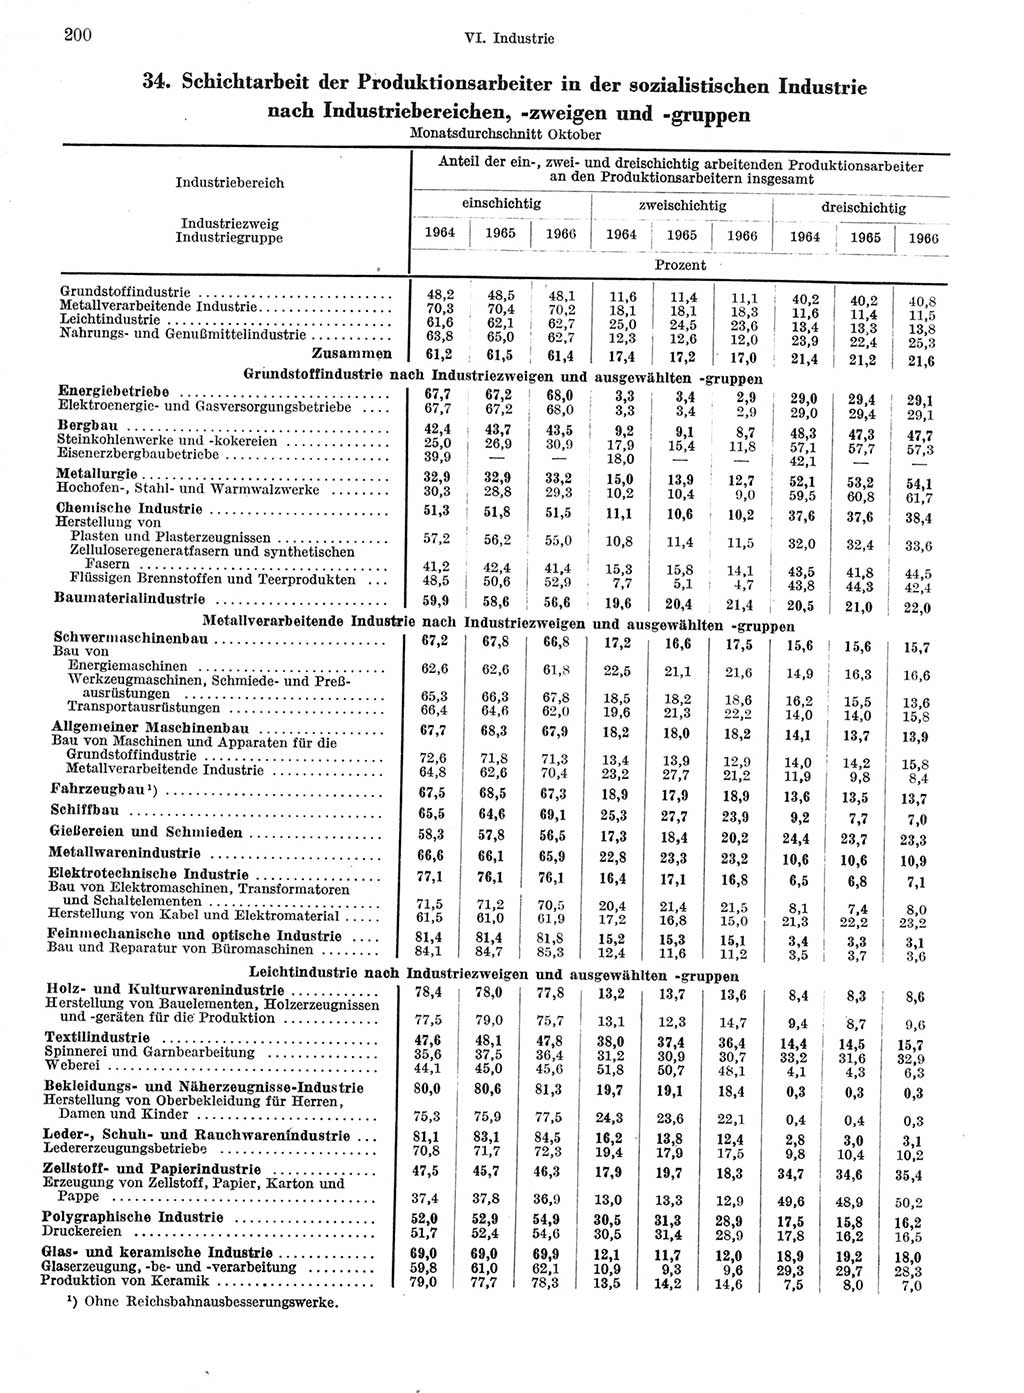 Statistisches Jahrbuch der Deutschen Demokratischen Republik (DDR) 1967, Seite 200 (Stat. Jb. DDR 1967, S. 200)